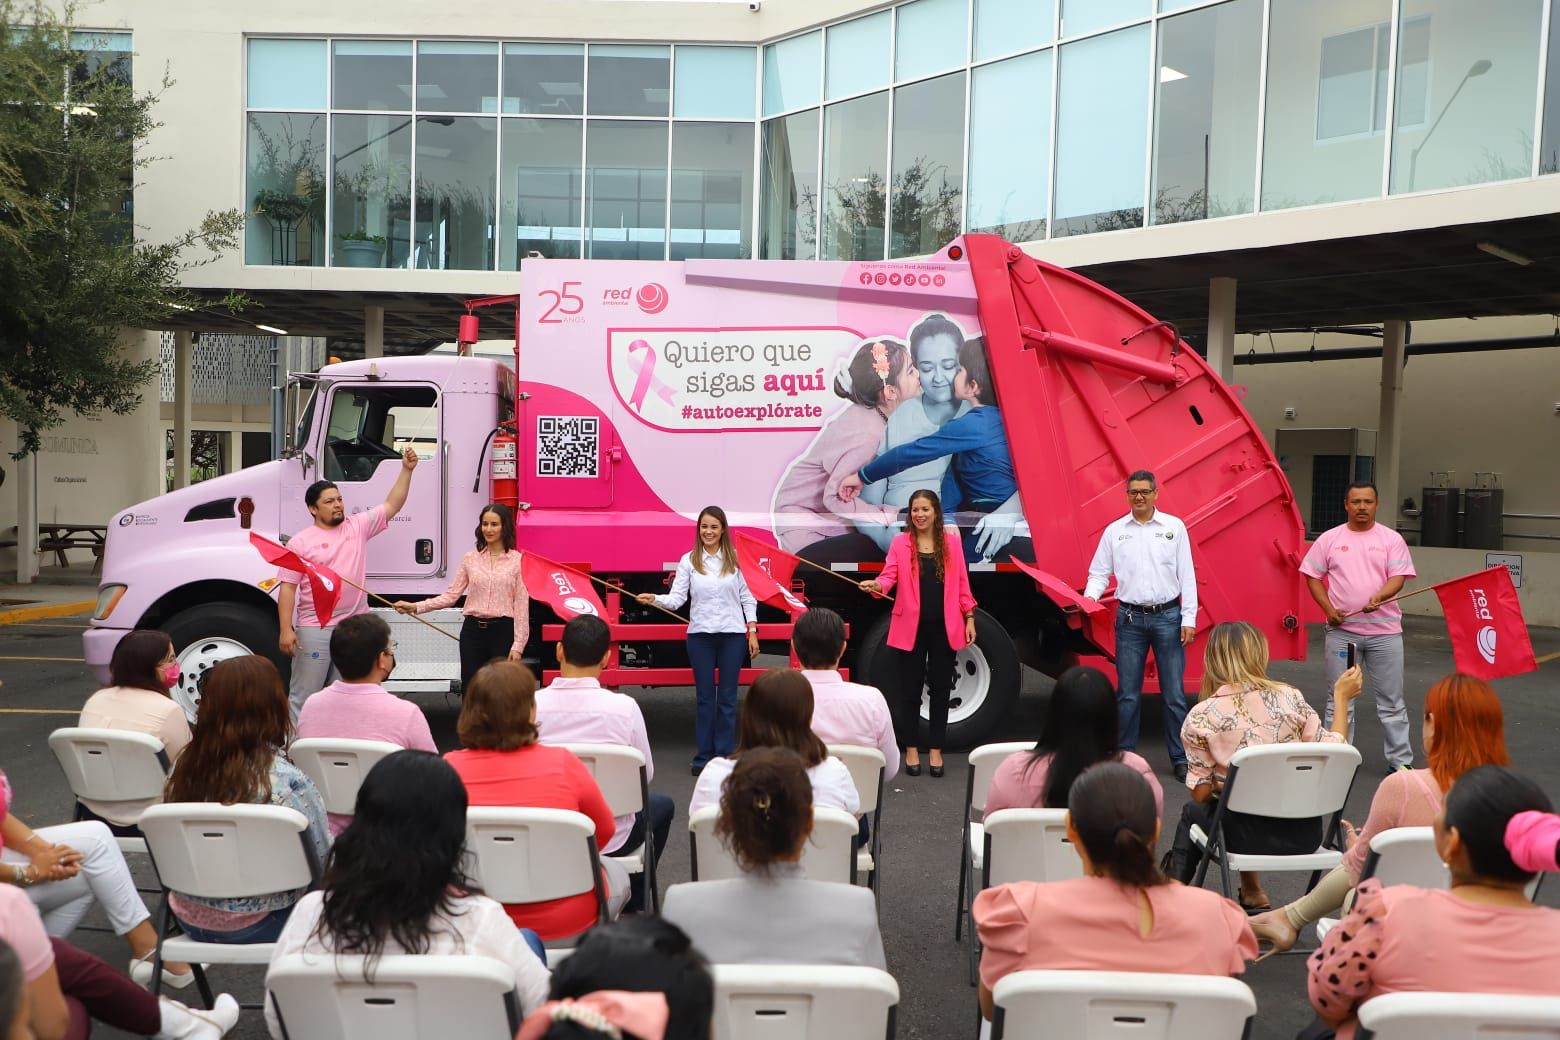 Concientizan sobre cáncer de mama con camión recolector